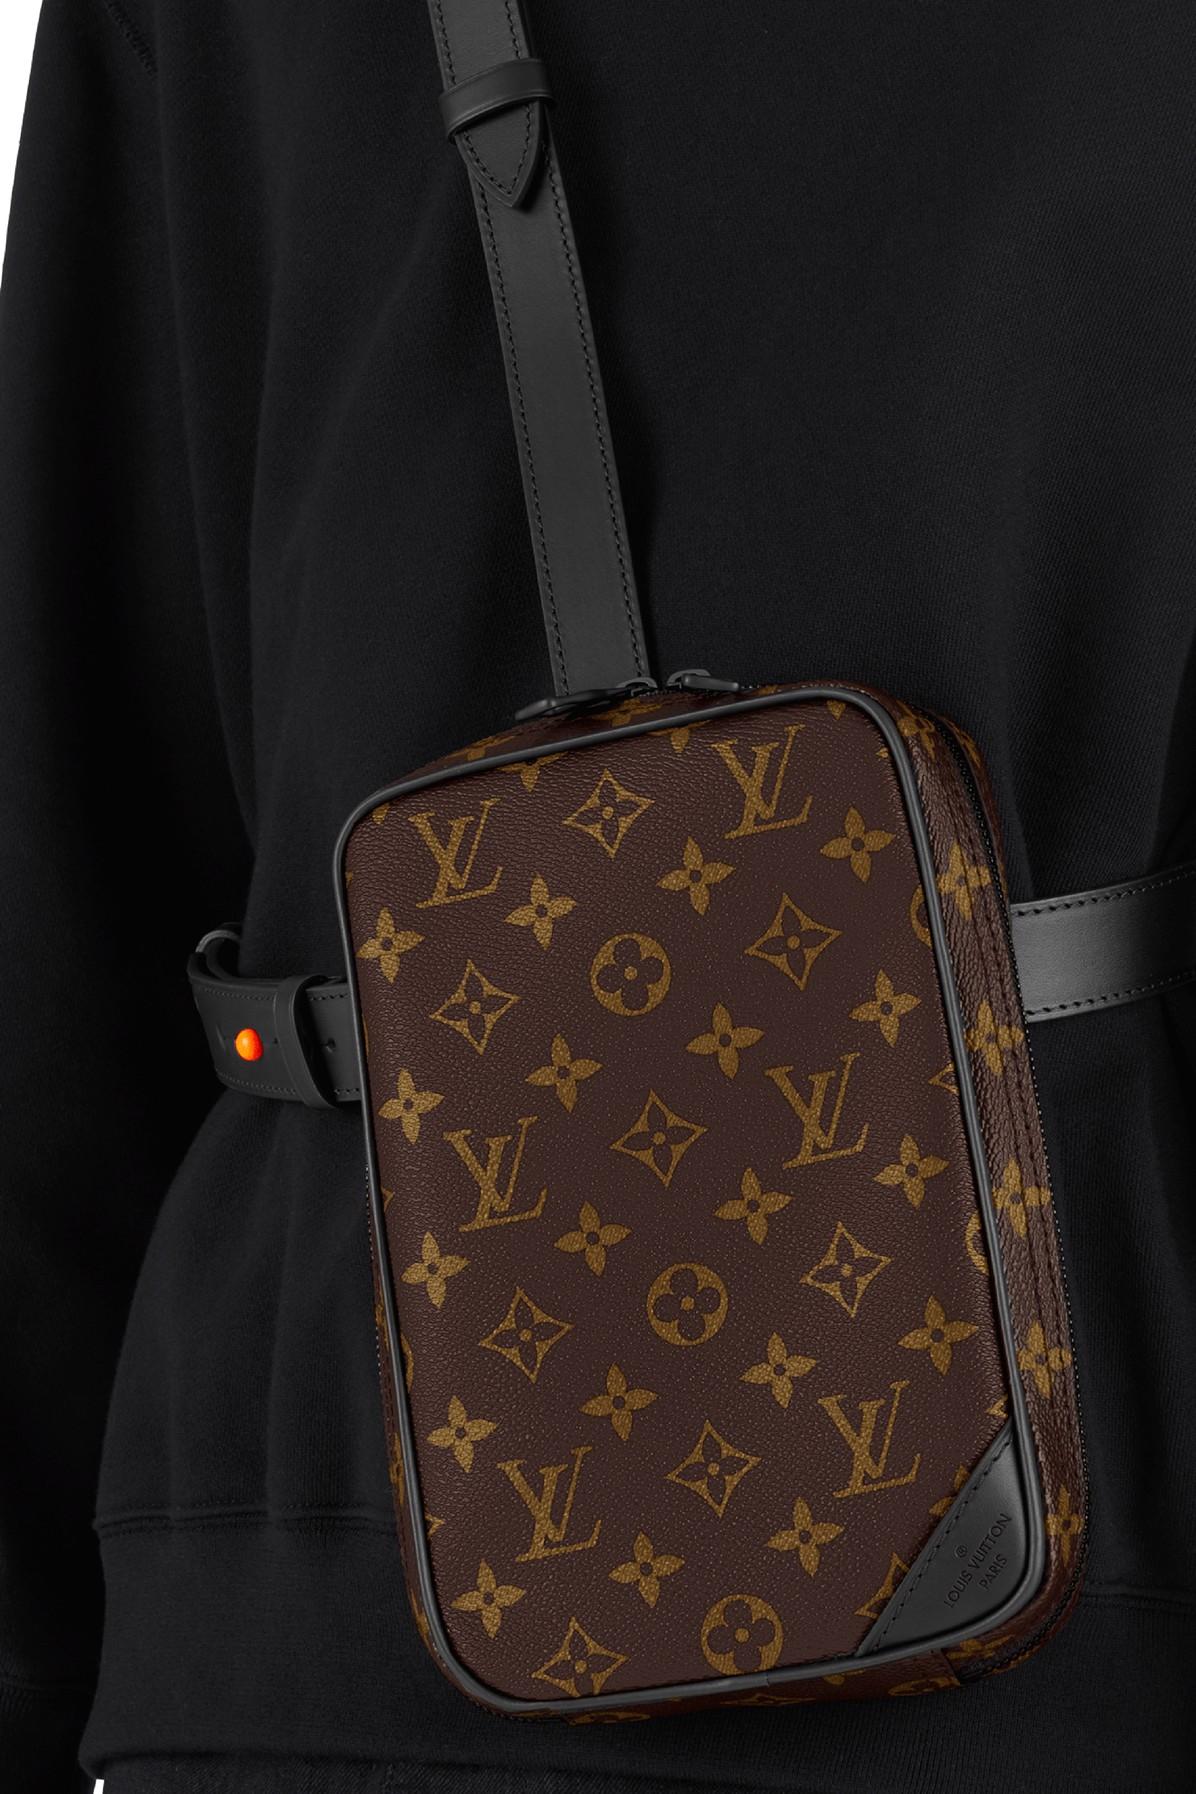 Louis Vuitton Men's Monogram Canvas Monogram Utility Side Bag